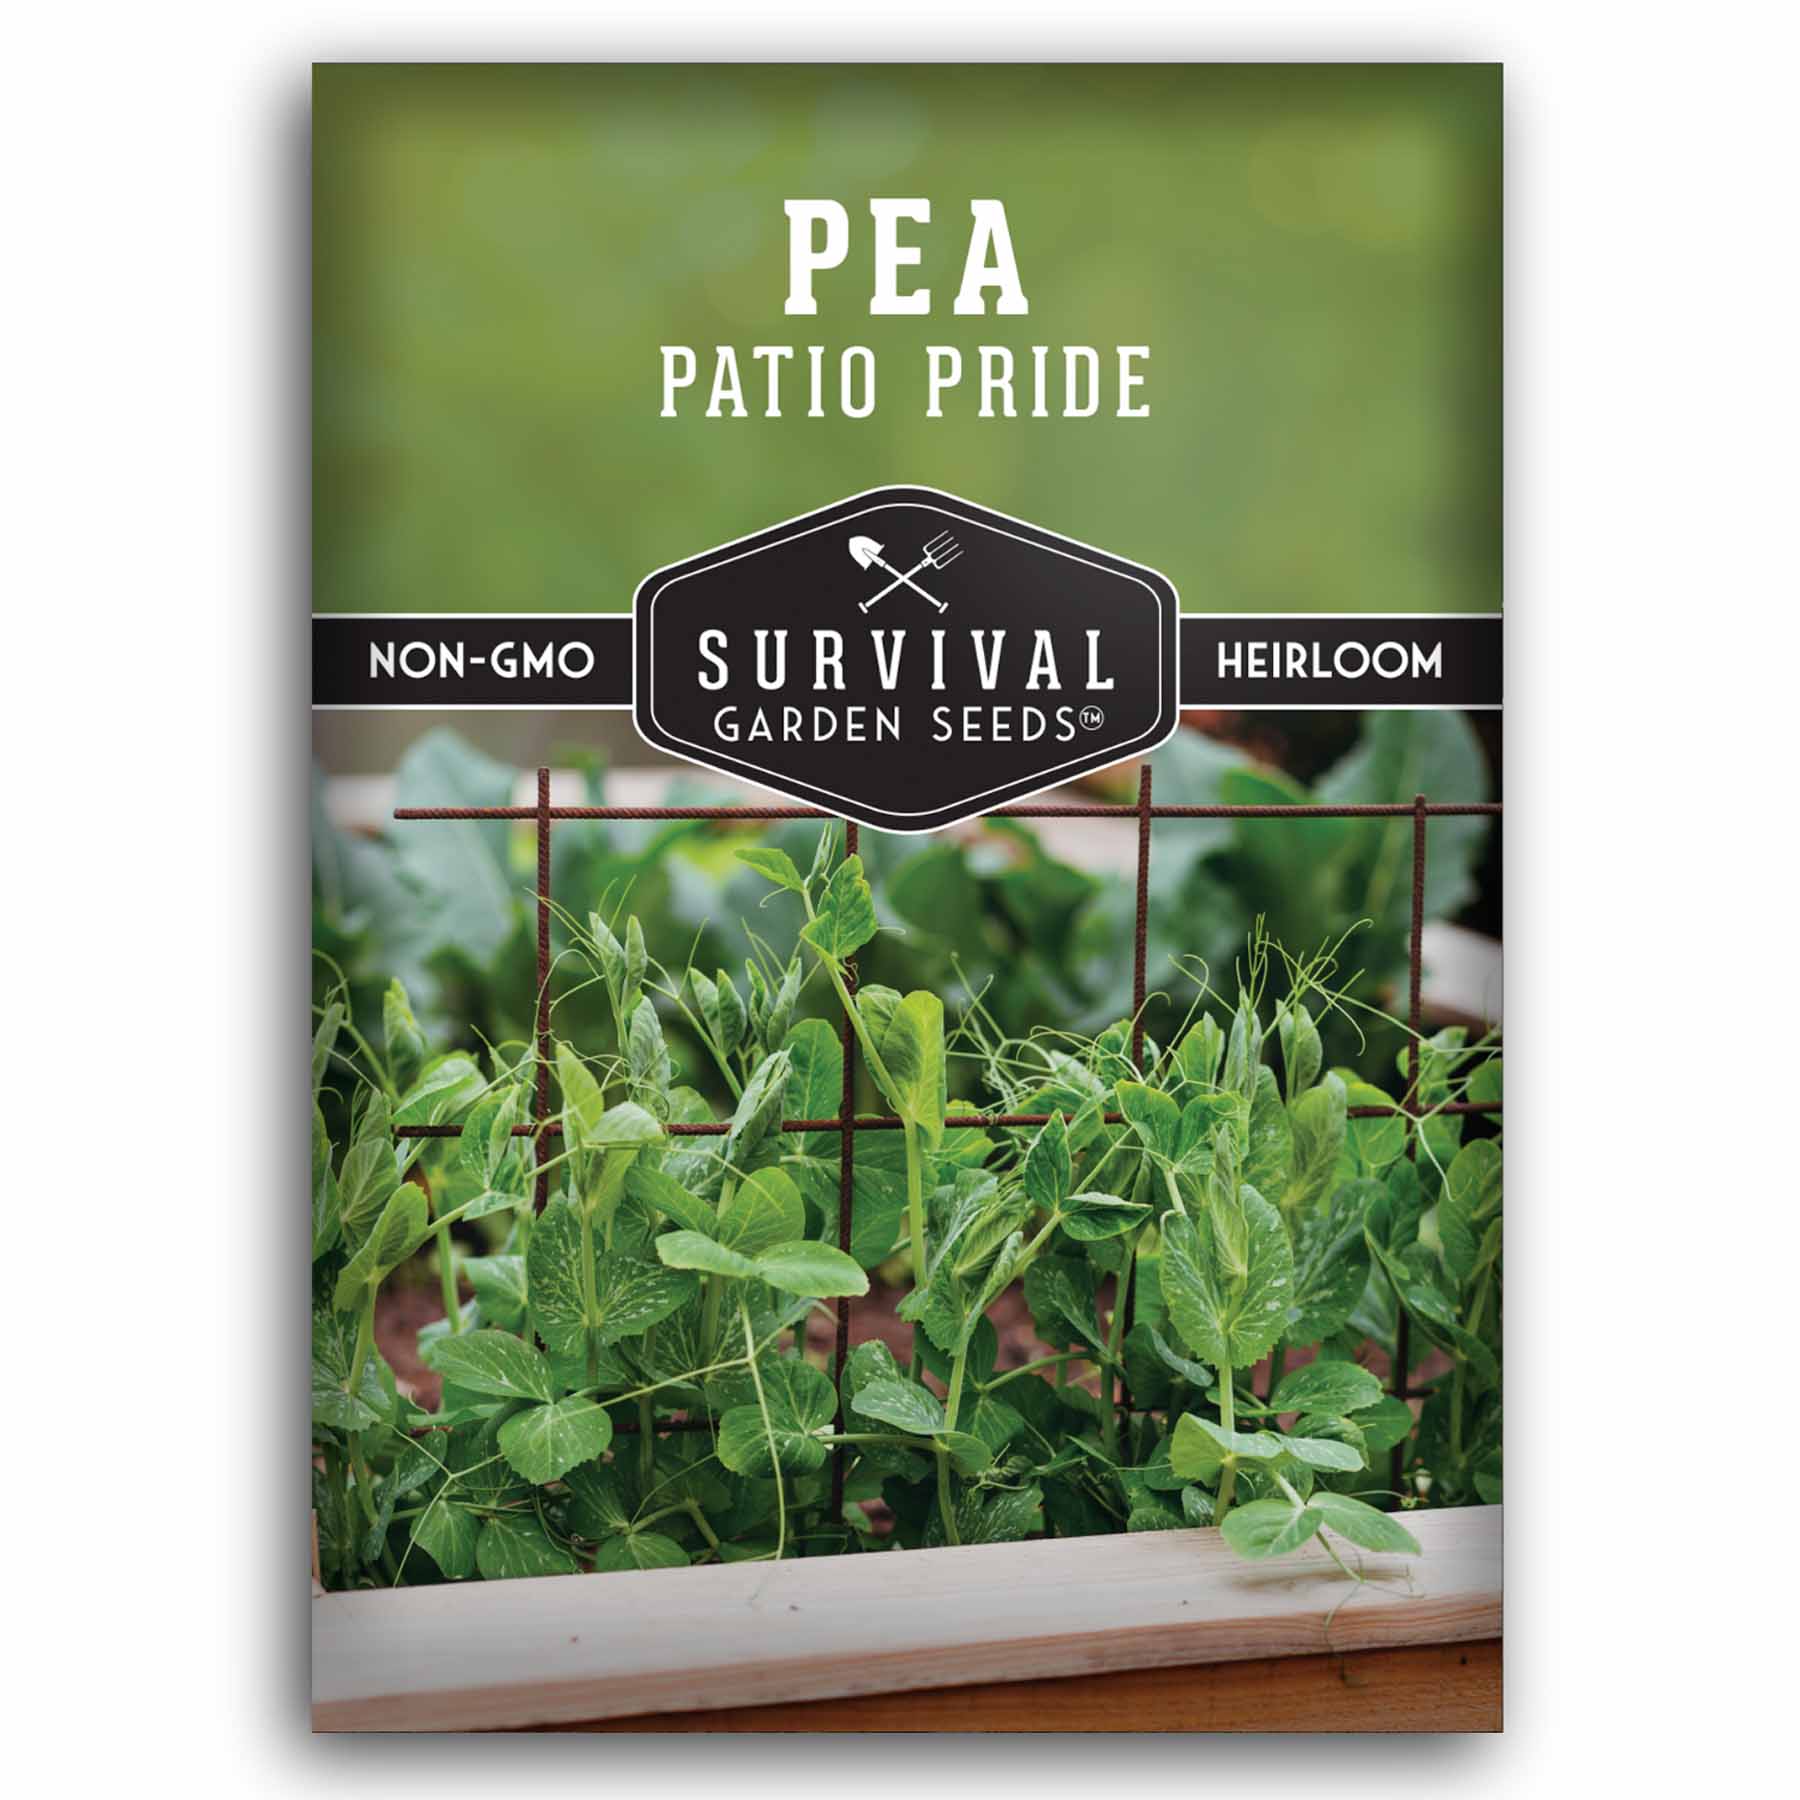 1 Packet of Patio Pride Pea seeds